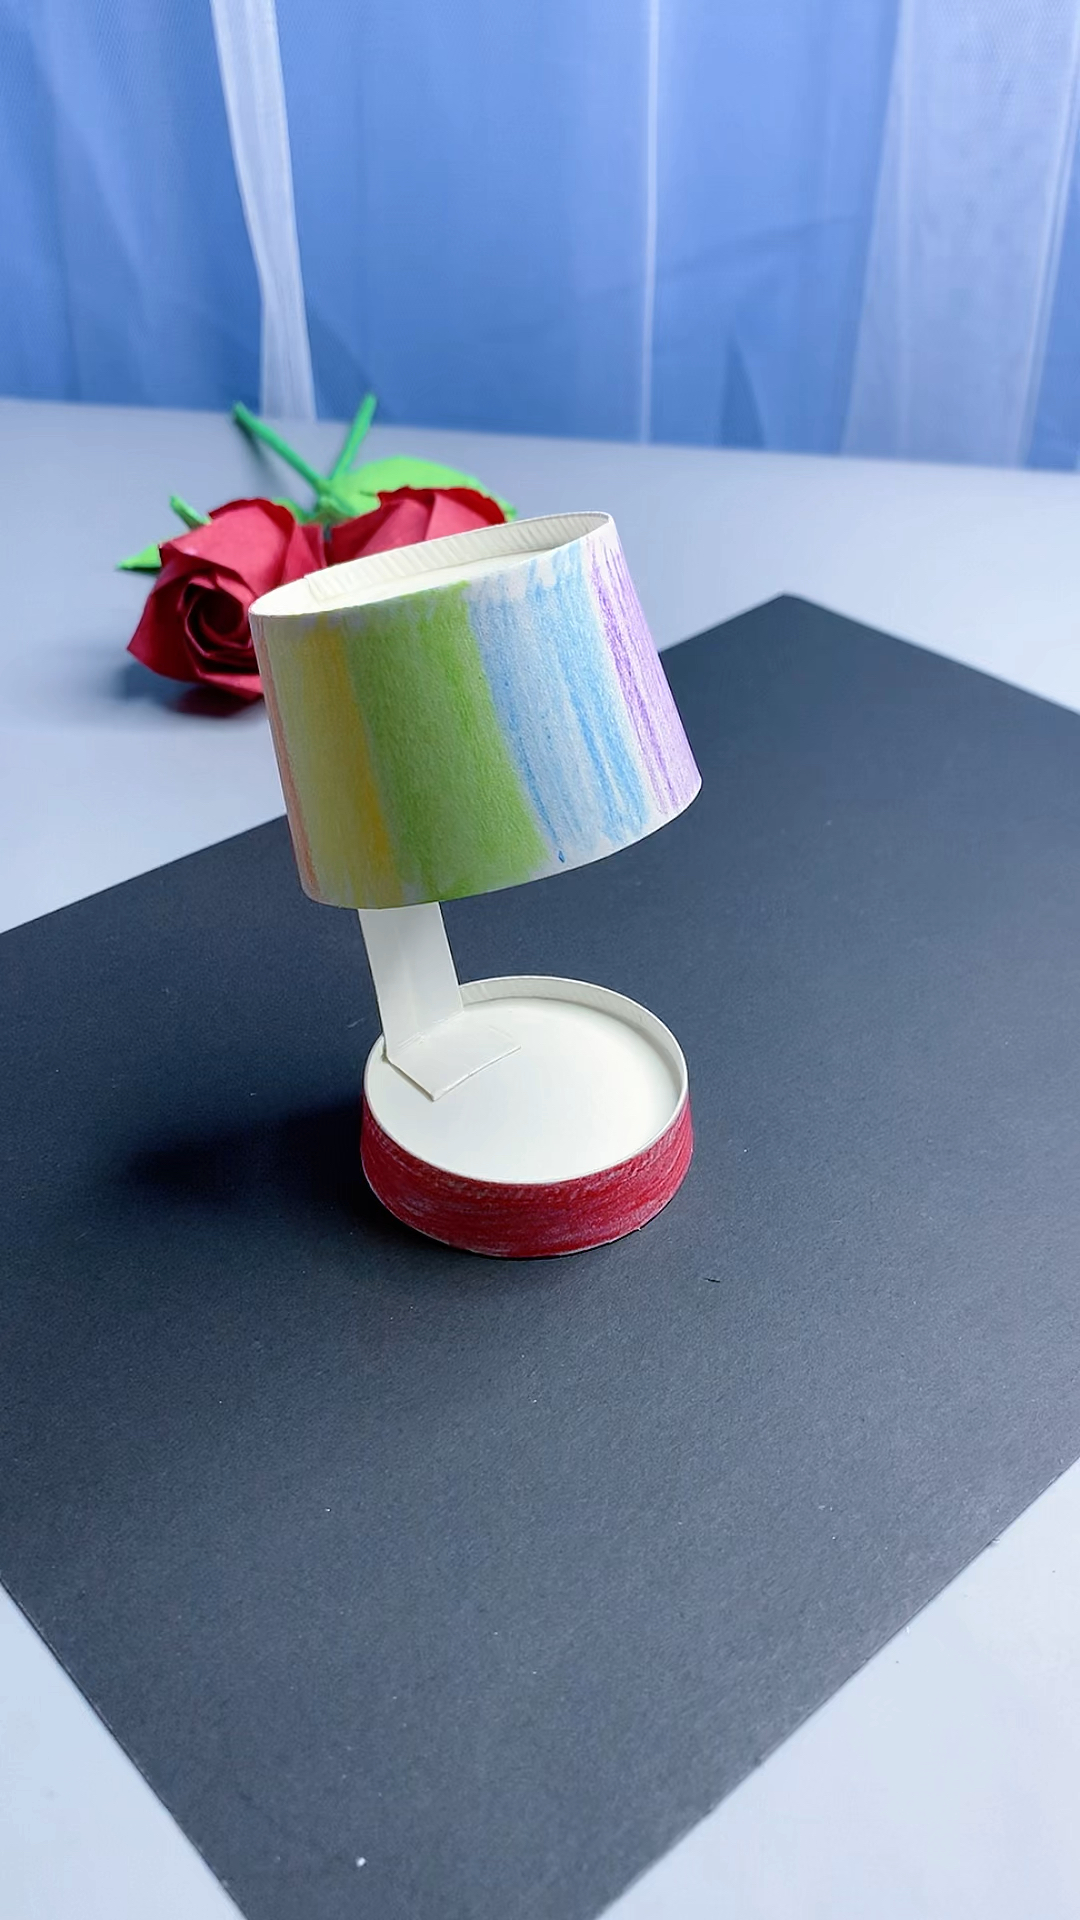 用纸杯做的迷你小台灯,除了不会亮,其他挺像的